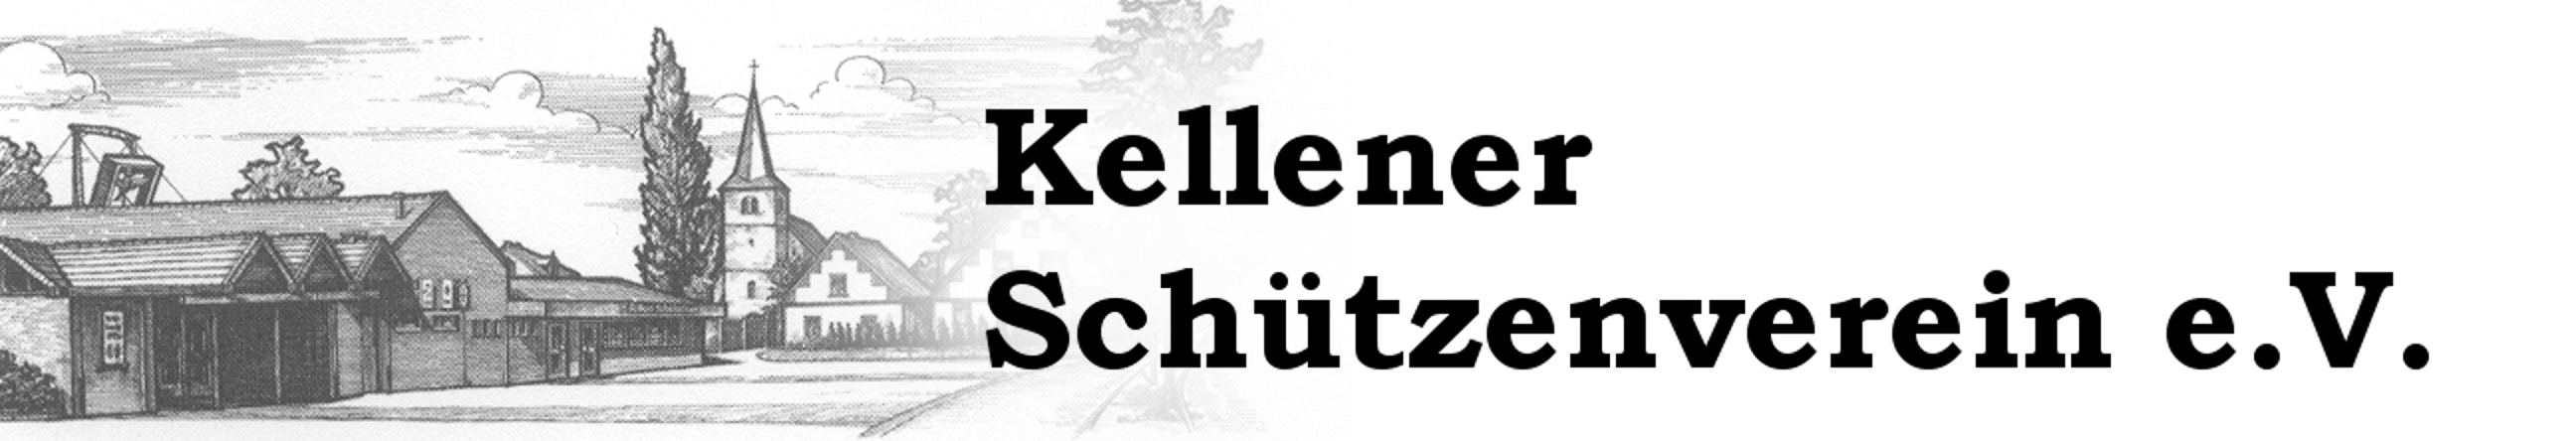 Kellener Schützenverein e.V.